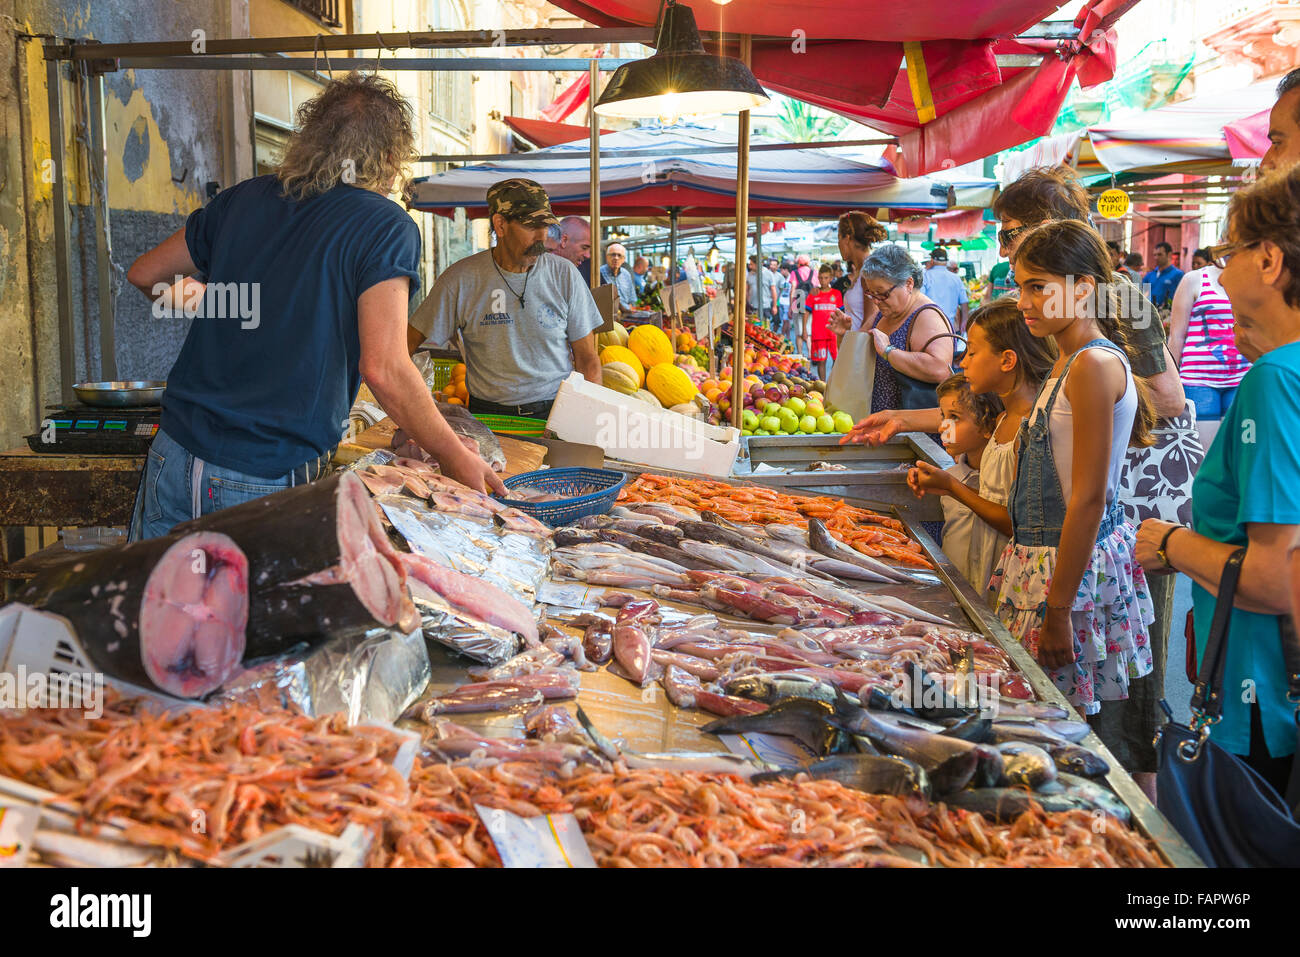 Marché aux poissons de la Sicile, vue de gens sicilienne en attente à un décrochage populaire dans le marché au poisson de Ortigia Ortigia (Syracuse) (Syracuse), en Sicile. Banque D'Images